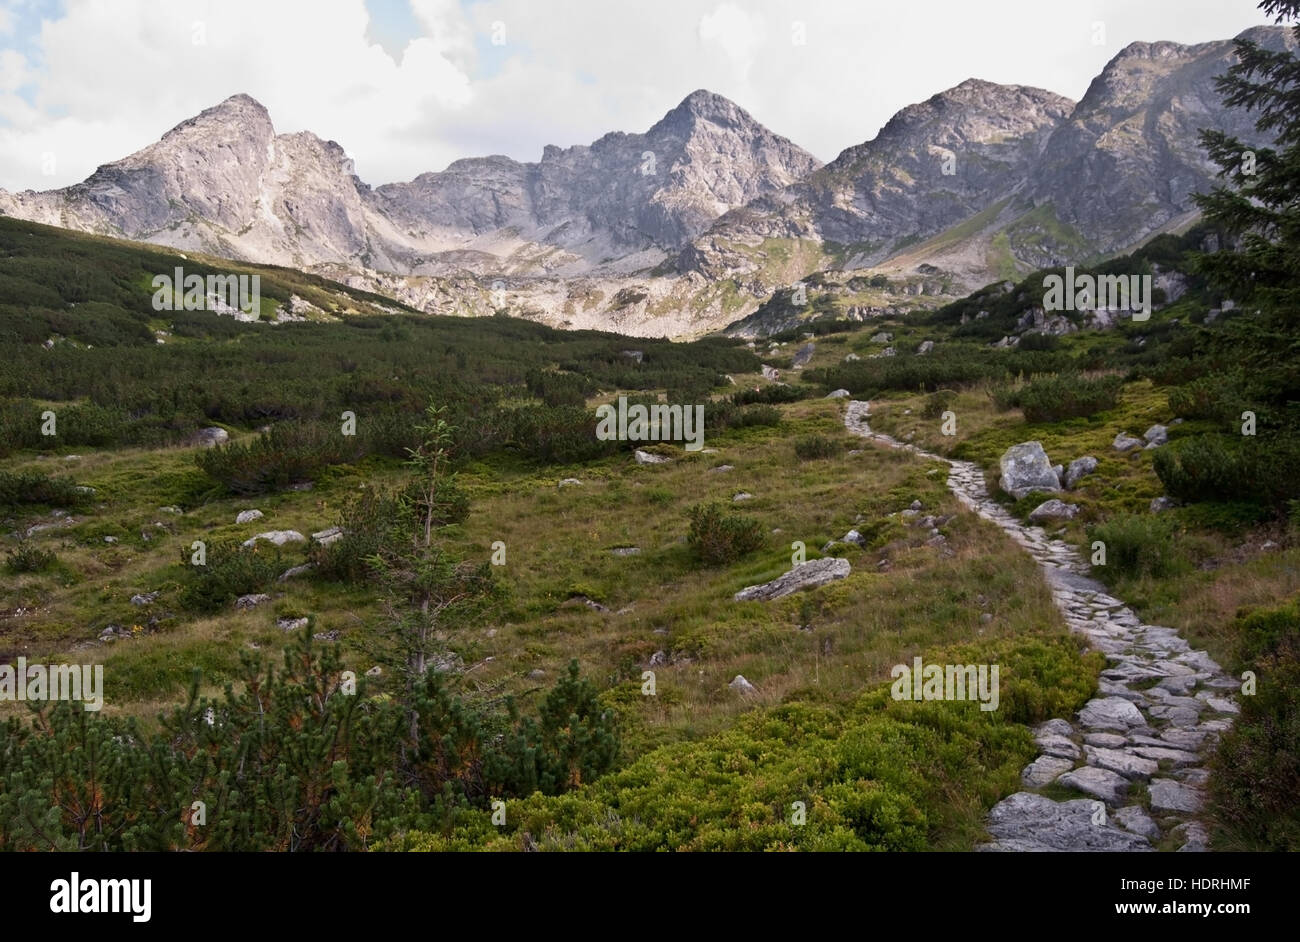 Dolina zielona gasienicowa mountain valley con pietra Hiking trail, erba e picchi in polacco parte degli Alti Tatra Foto Stock